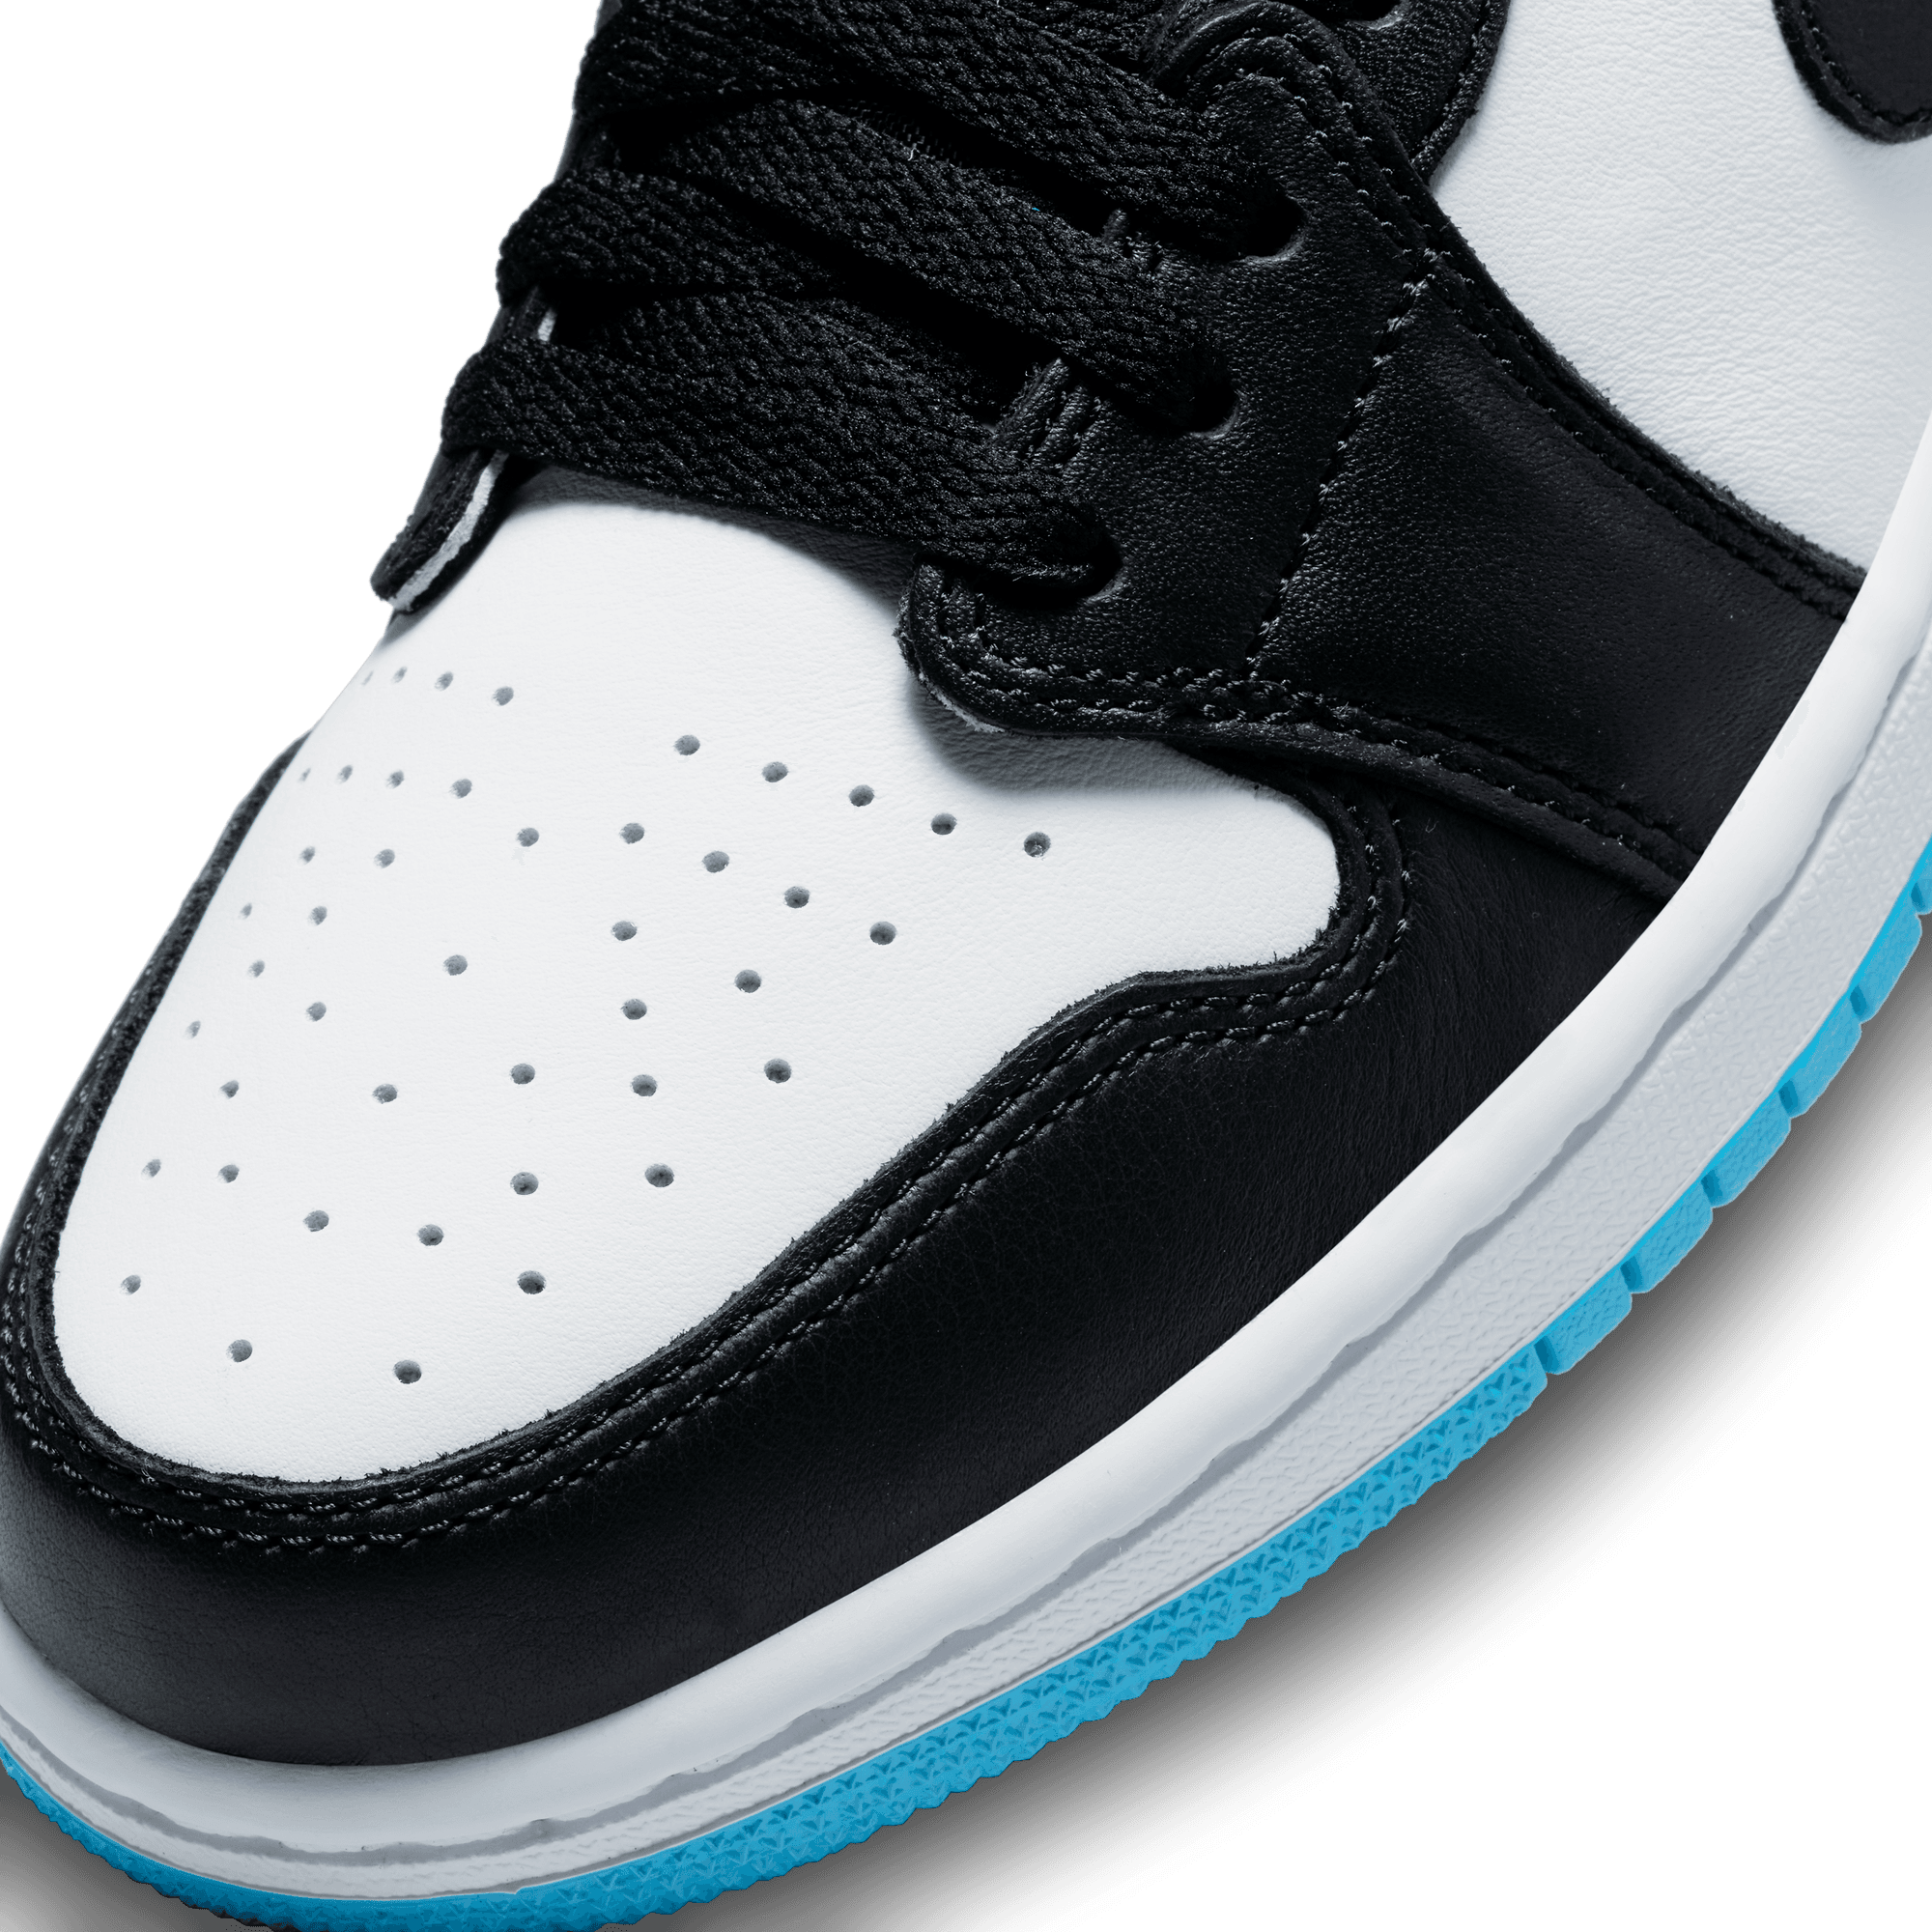 Air Jordan 1 Low OG Women's Shoes